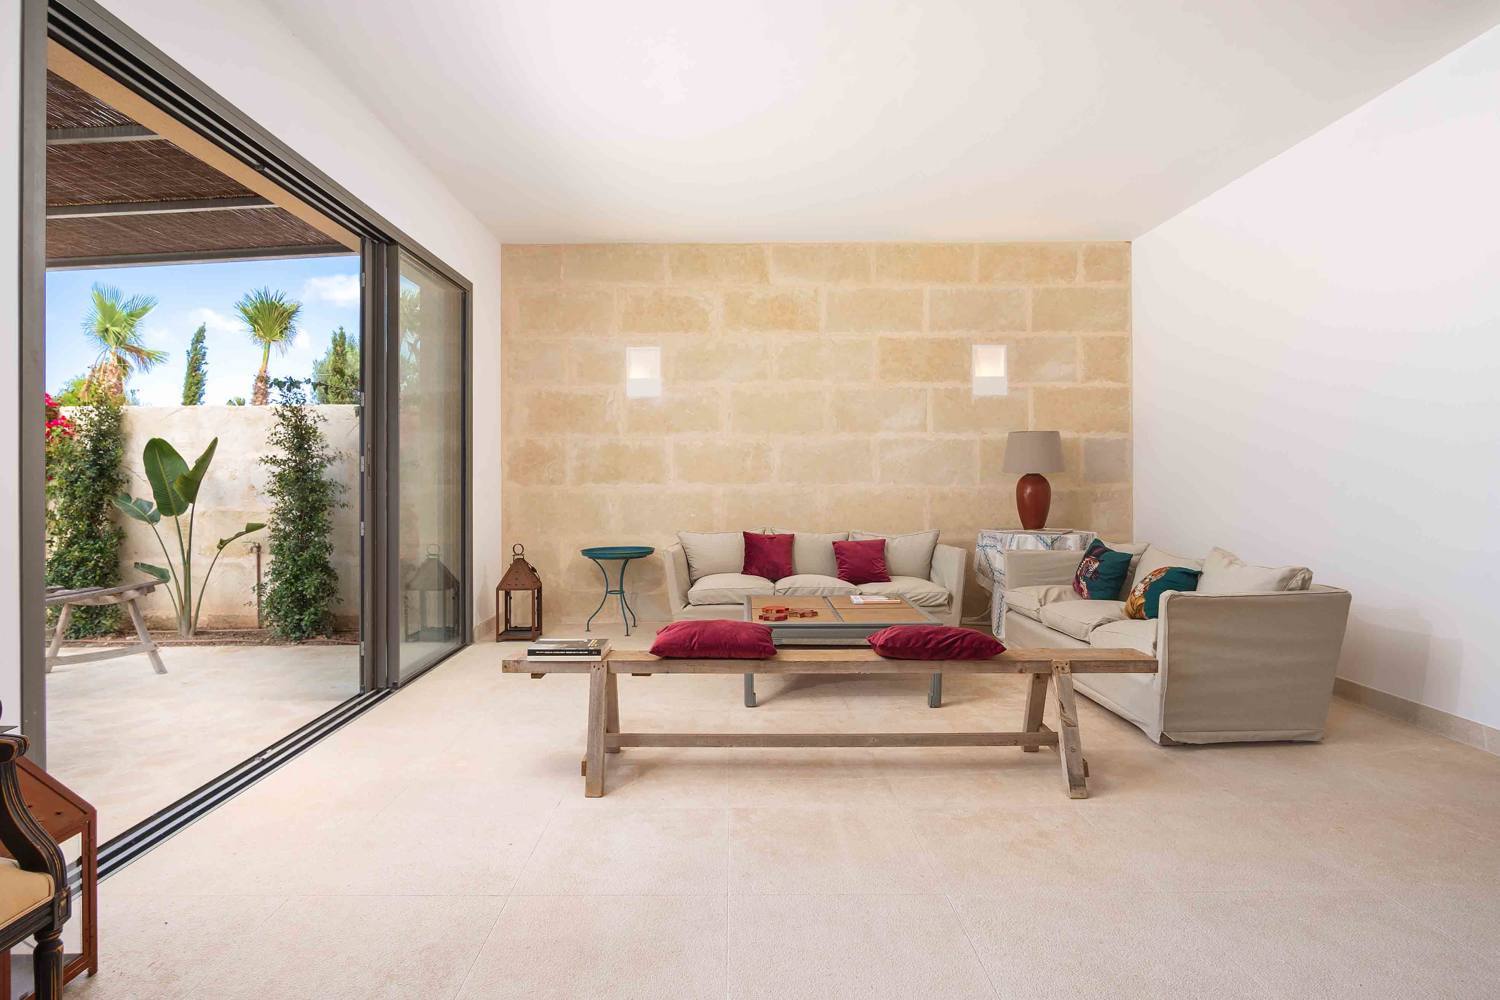 Lujoso adosado de nueva construcción de 4 dormitorios con piscina y jardín en Ses Salines